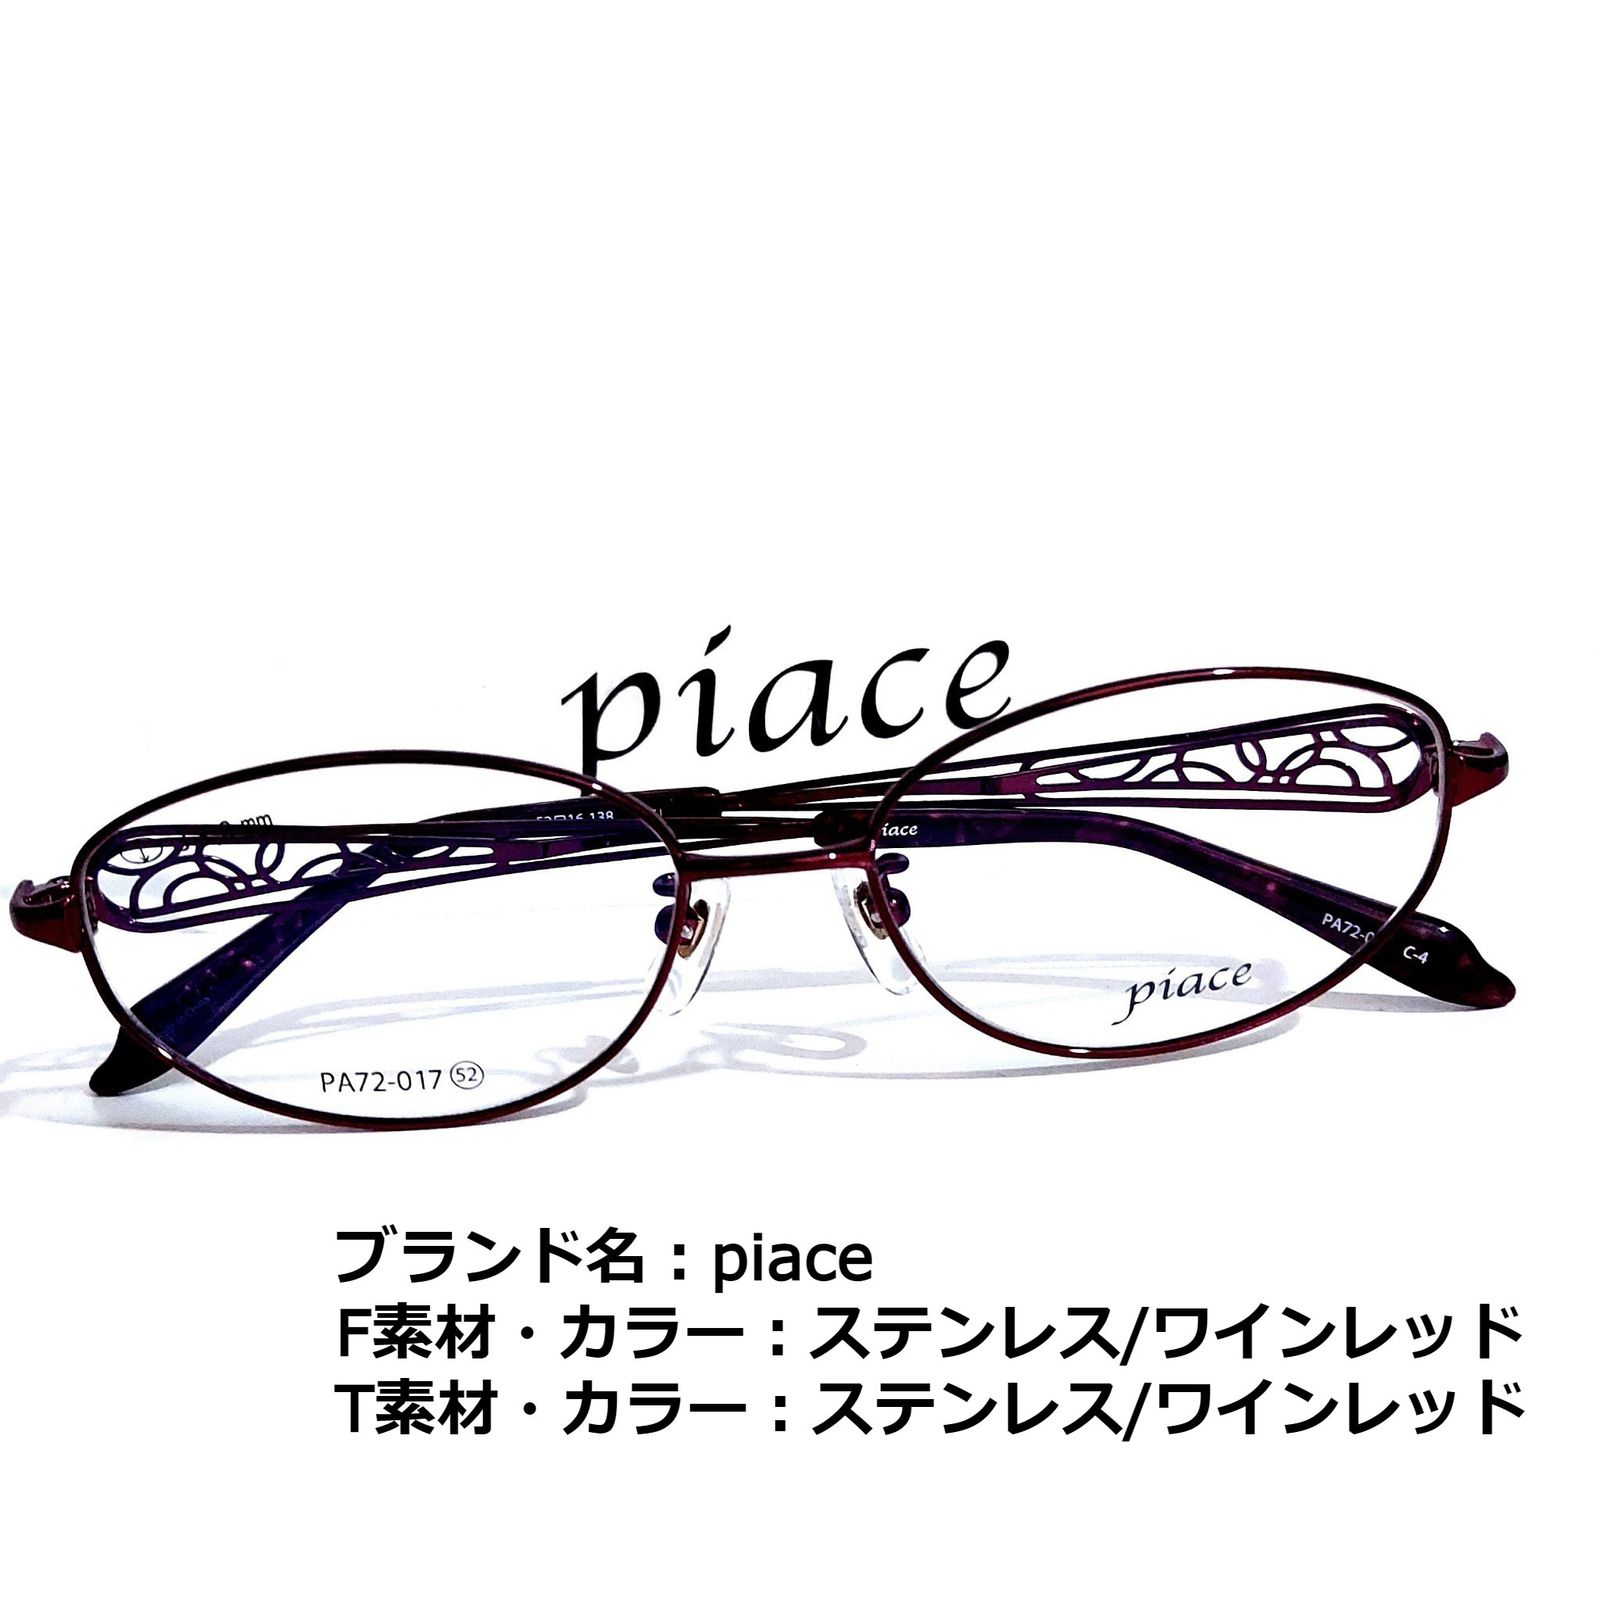 メルカリShops - No.1633メガネ piace【度数入り込み価格】